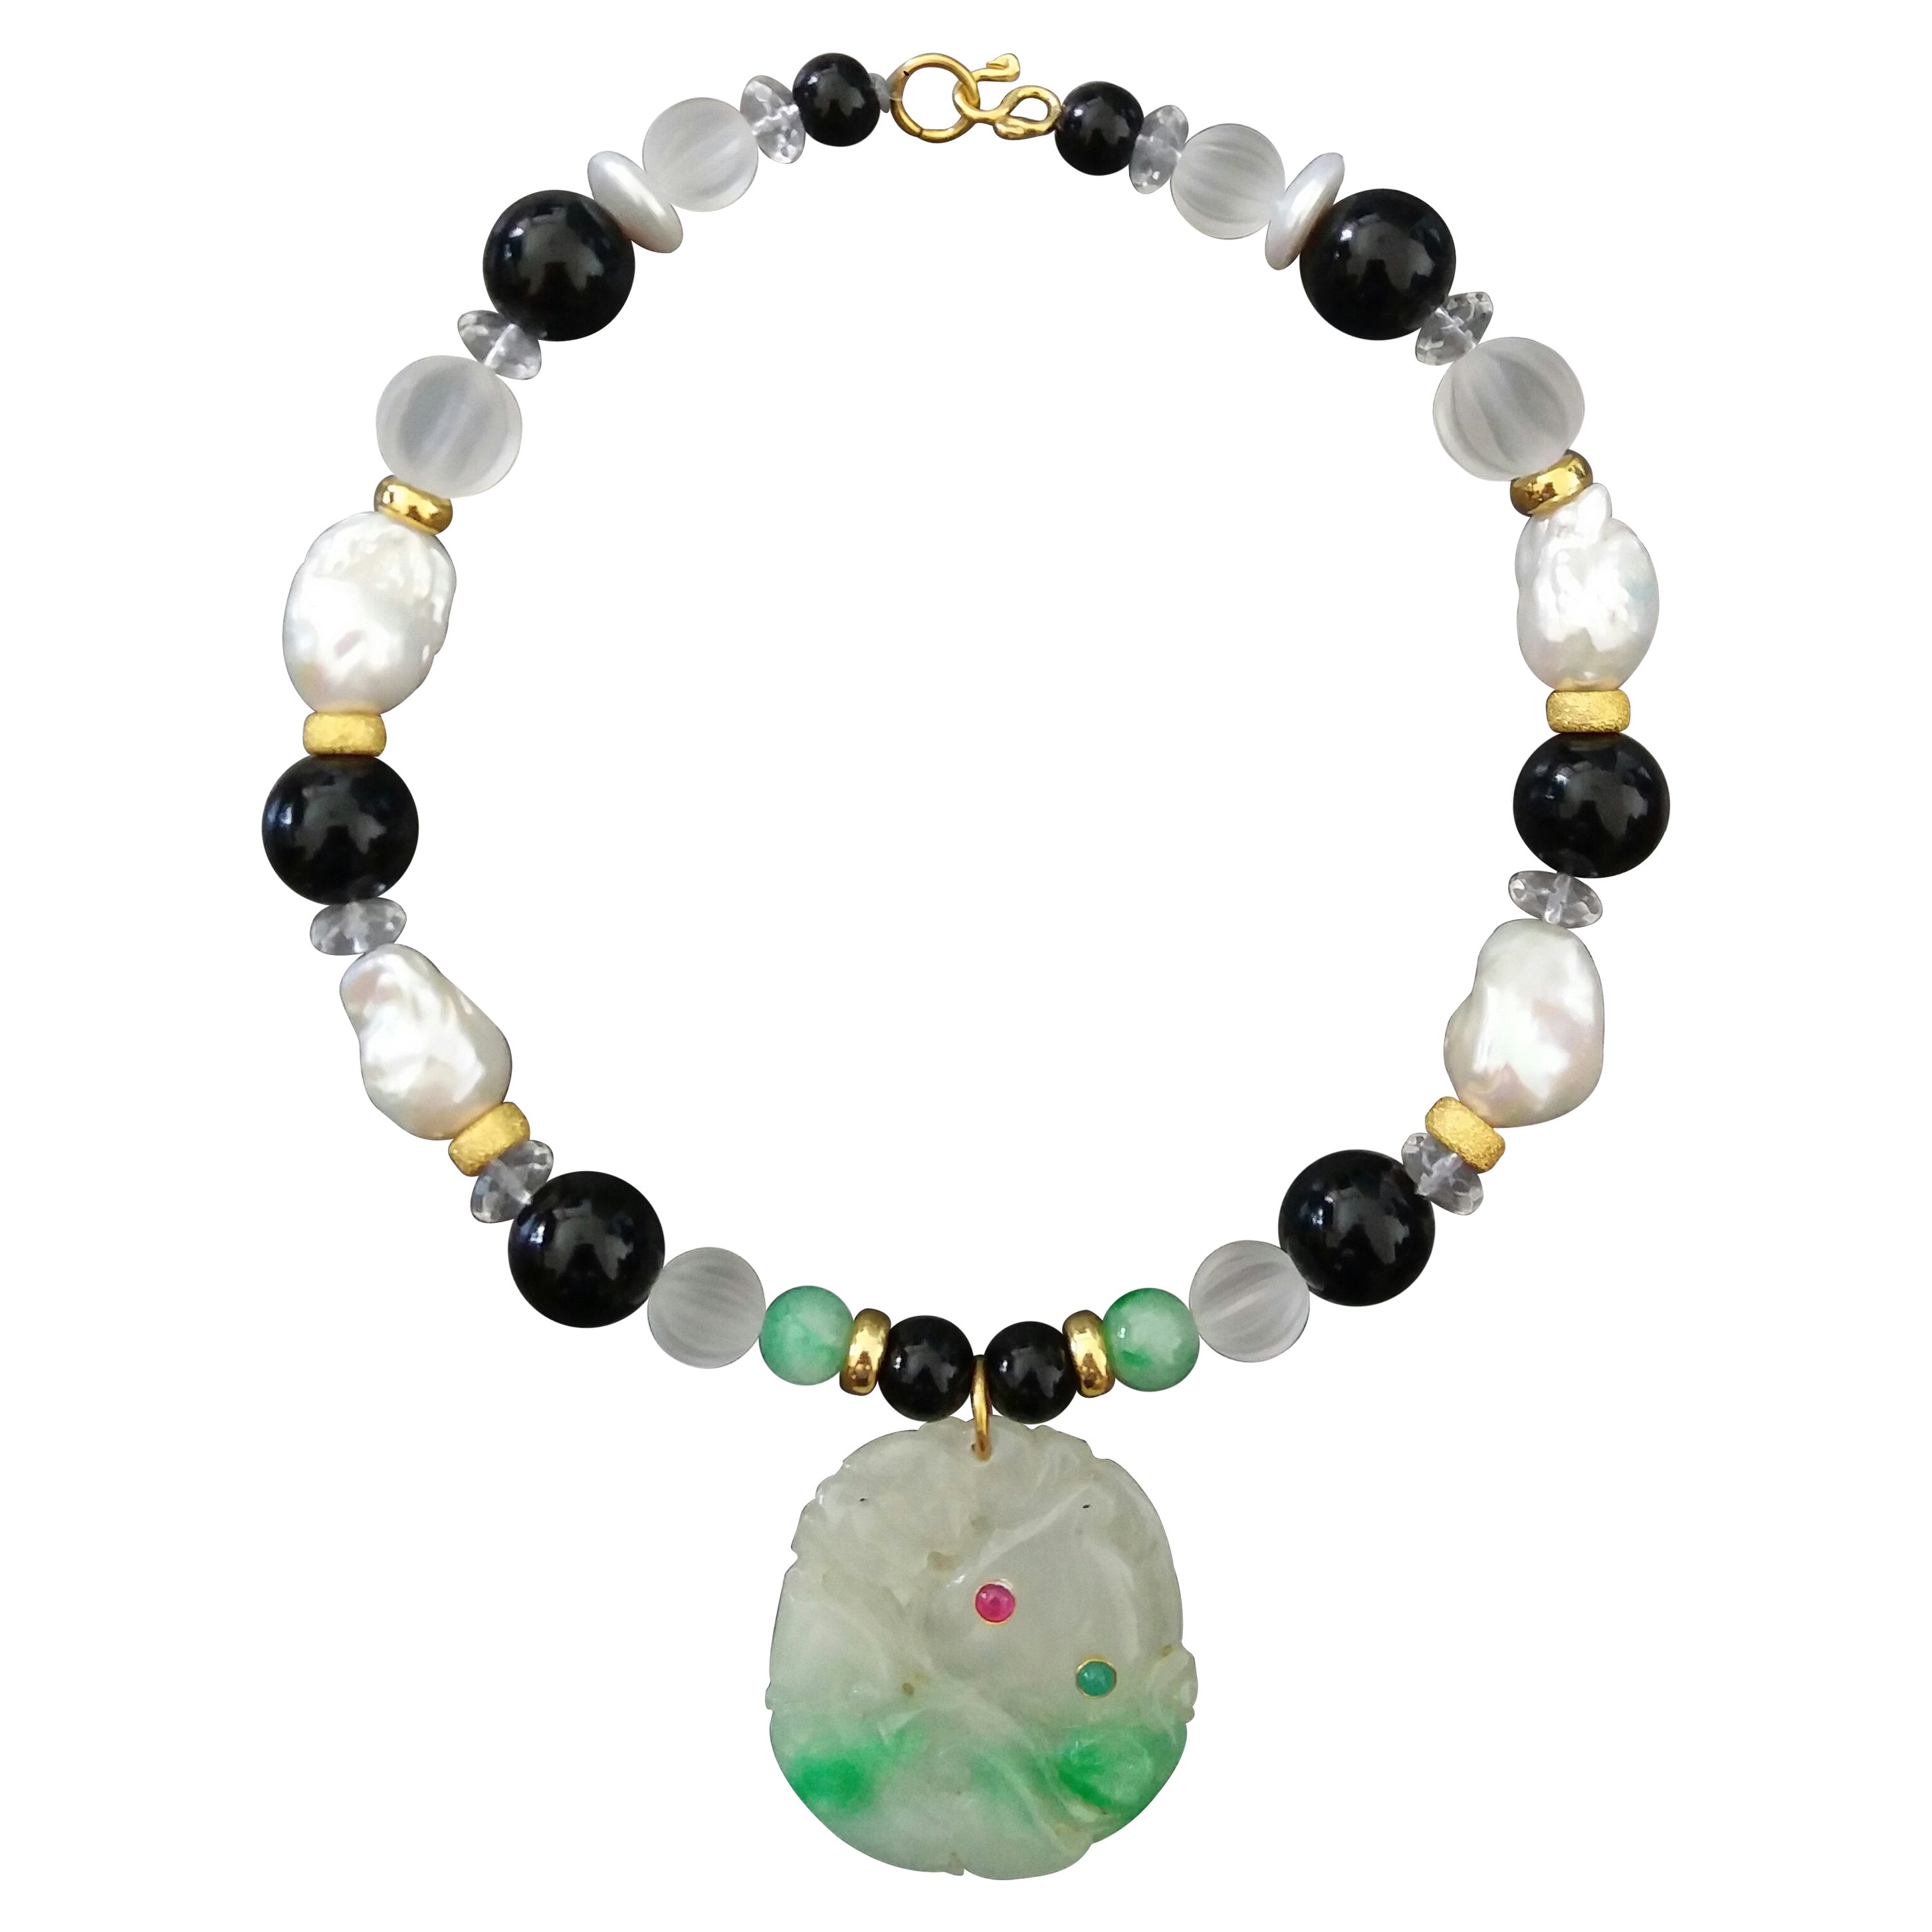 Colliers en or avec pendentifs en jade de Birmanie, perles baroques, quartz, onyx noir, rubis et émeraudes